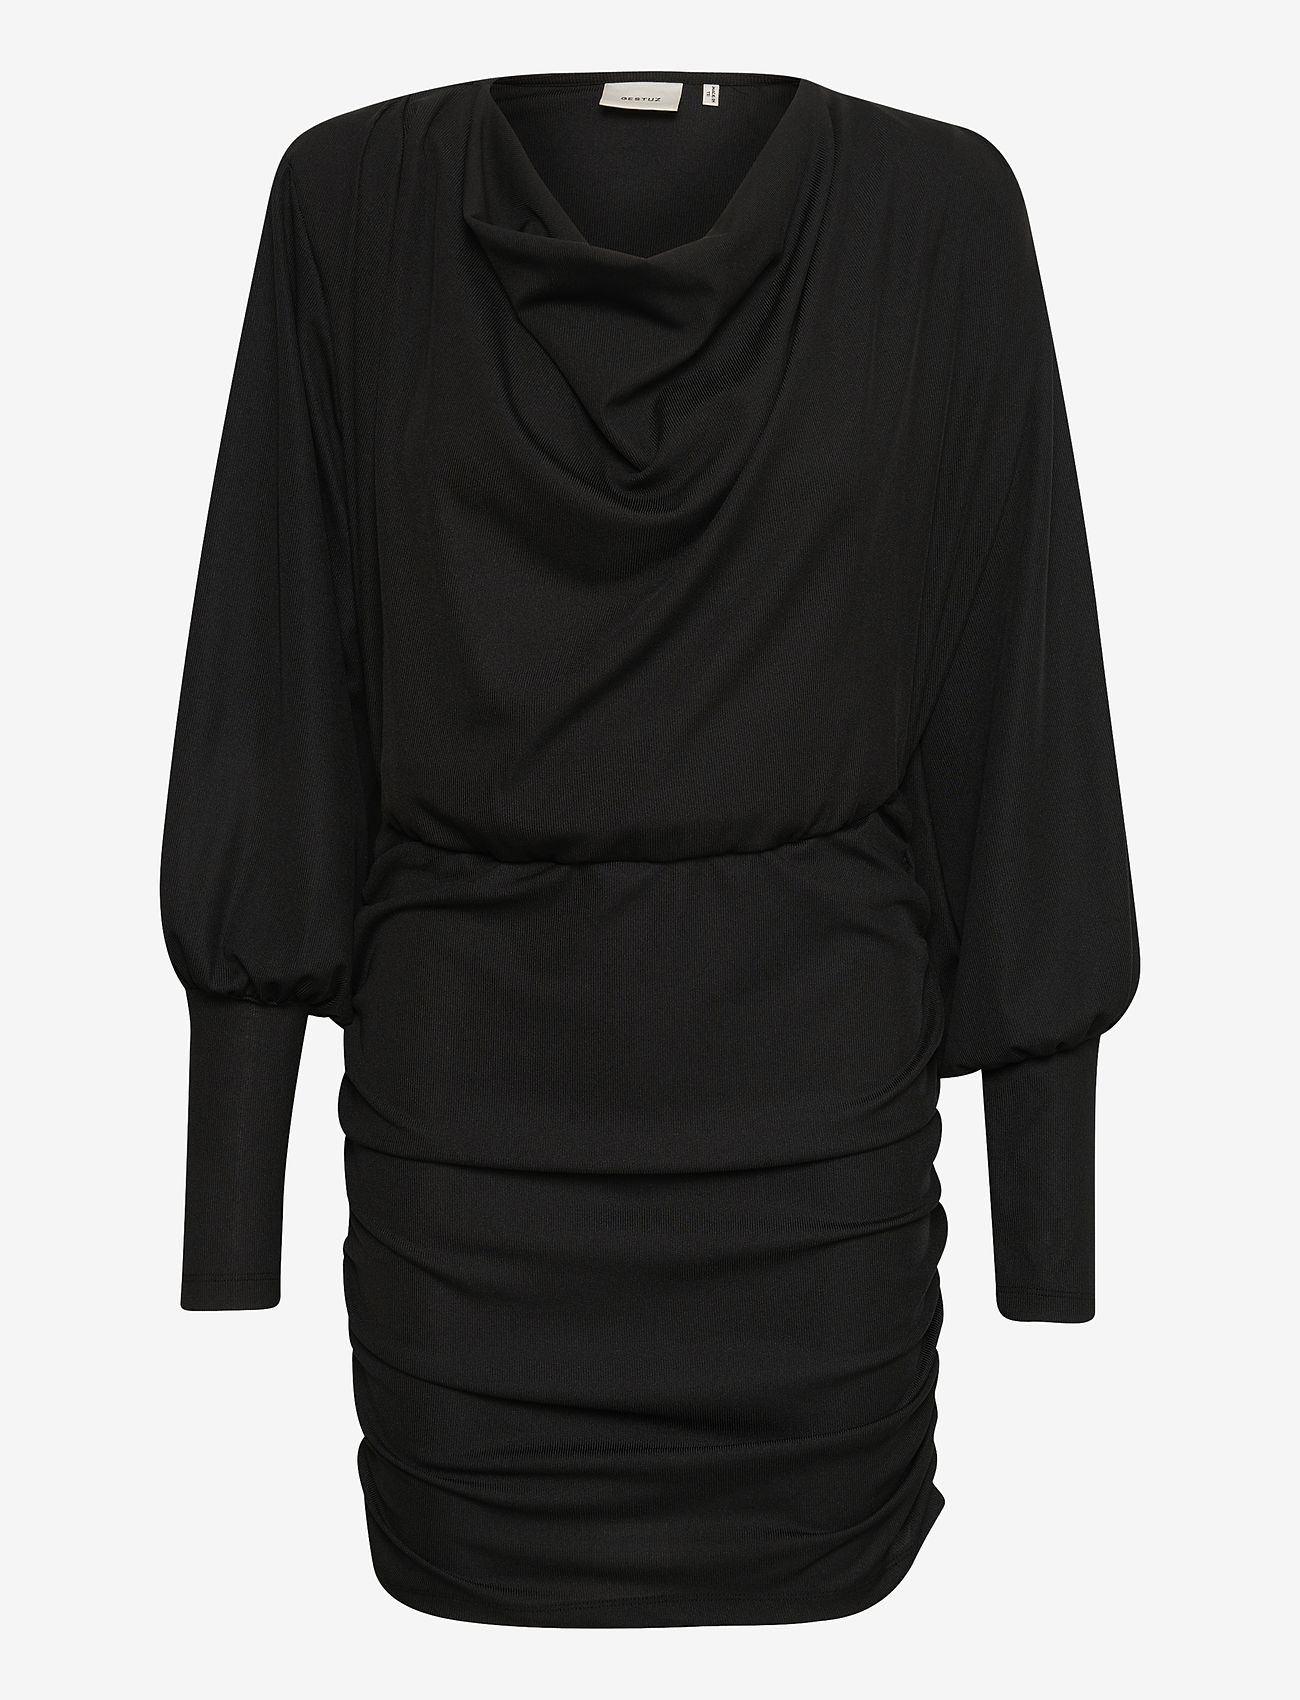 Gestuz - UminaGZ dress - festklær til outlet-priser - black - 0